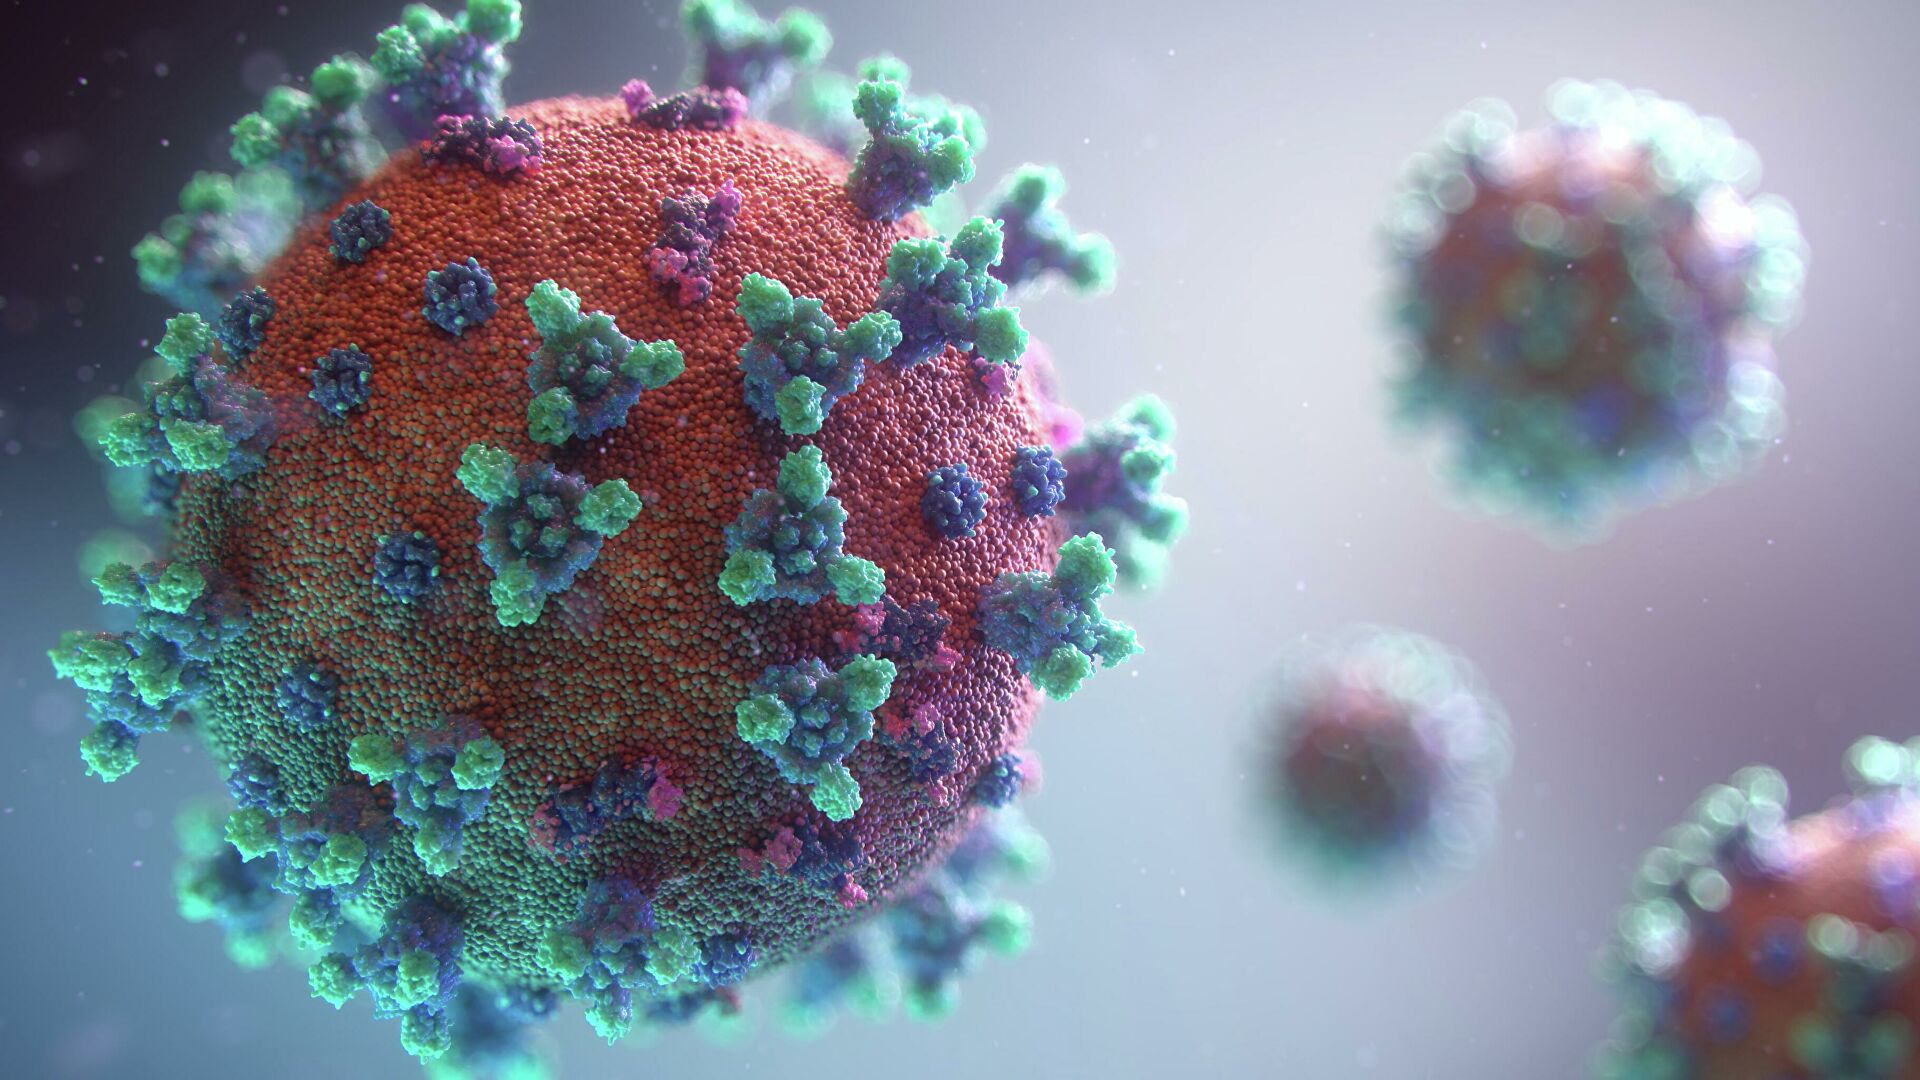 Эксперт рассказал, чем коронавирус отличается от ряда других вирусов